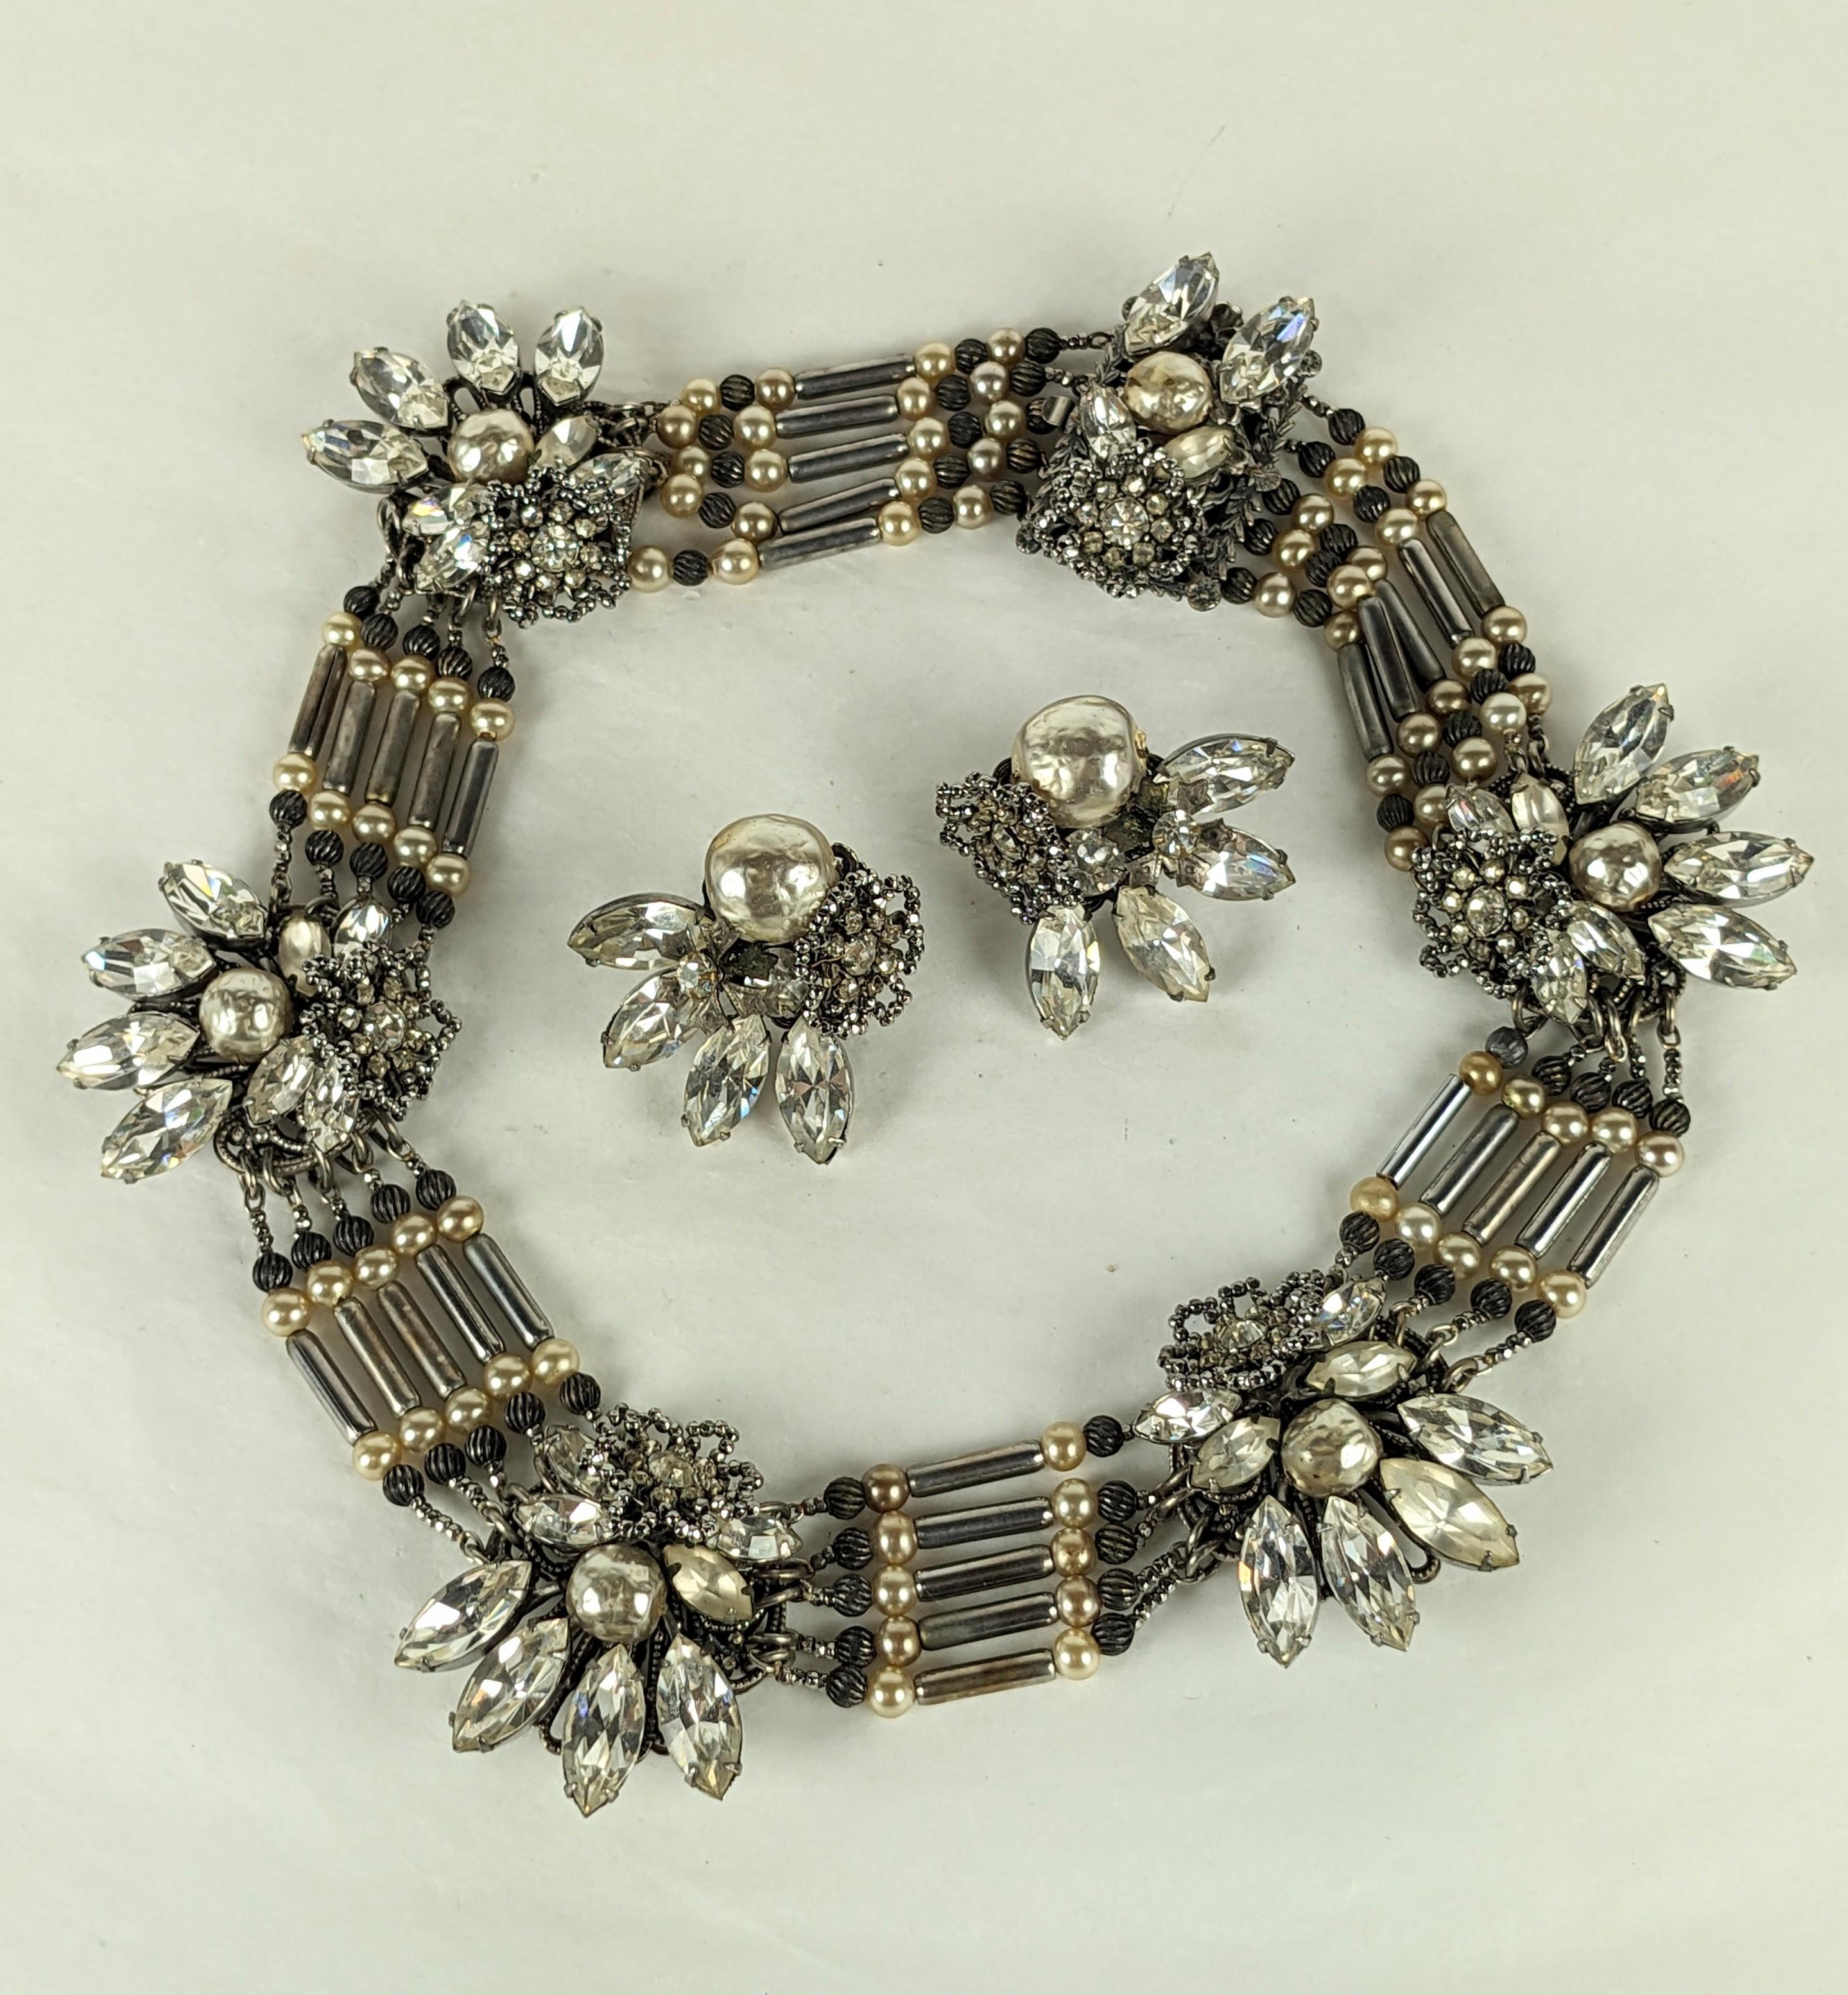 Extraordinaire suite de colliers en perles et acier taillé de Miriam Haskell, datant des années 1940. Des stations élaborées de fausses perles, de cristaux marquises et de fleurons en acier taillé sont enfilées entre des perles à bascule en argent,